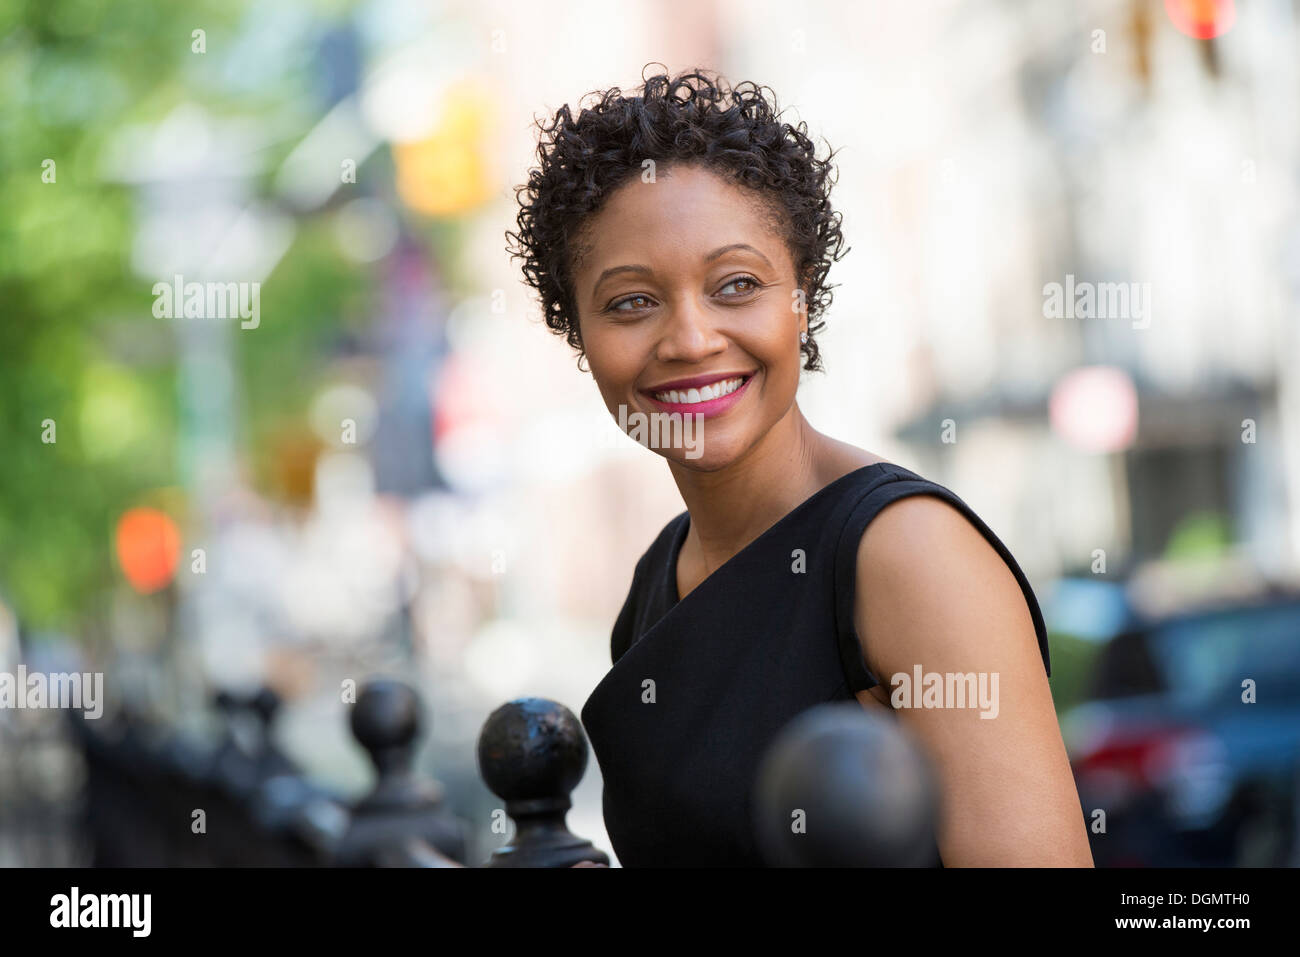 Menschen in Bewegung. Eine Frau in einem schwarzen Kleid auf einer Stadtstraße. Stockfoto